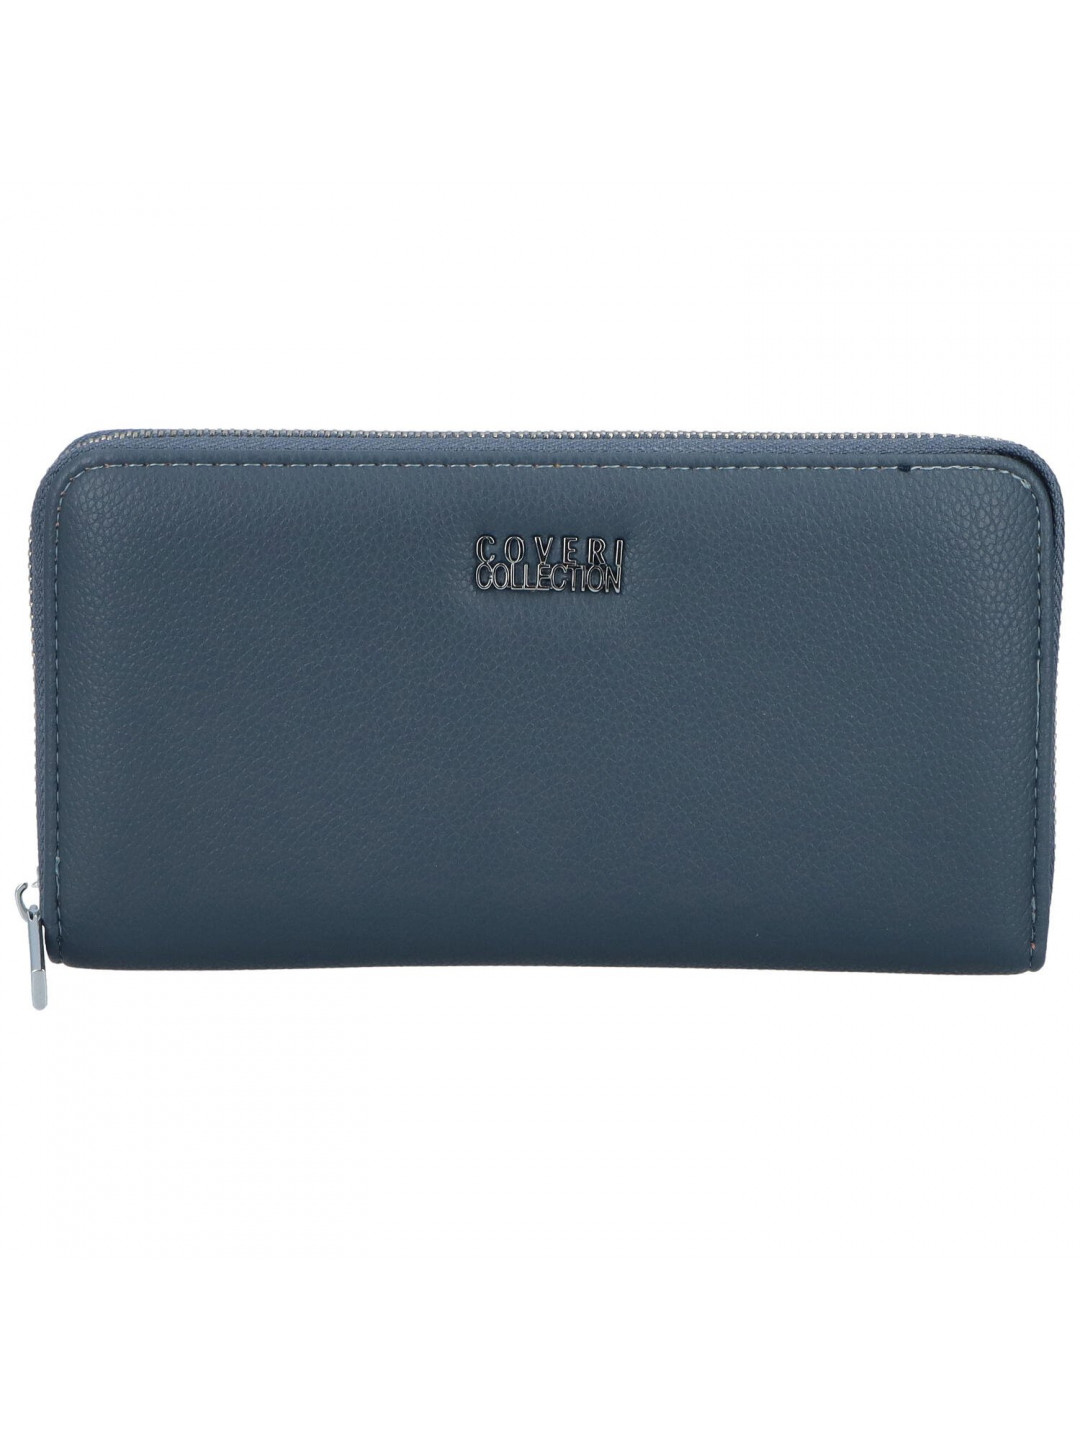 Dámská peněženka tmavě modrá – Coveri CW51